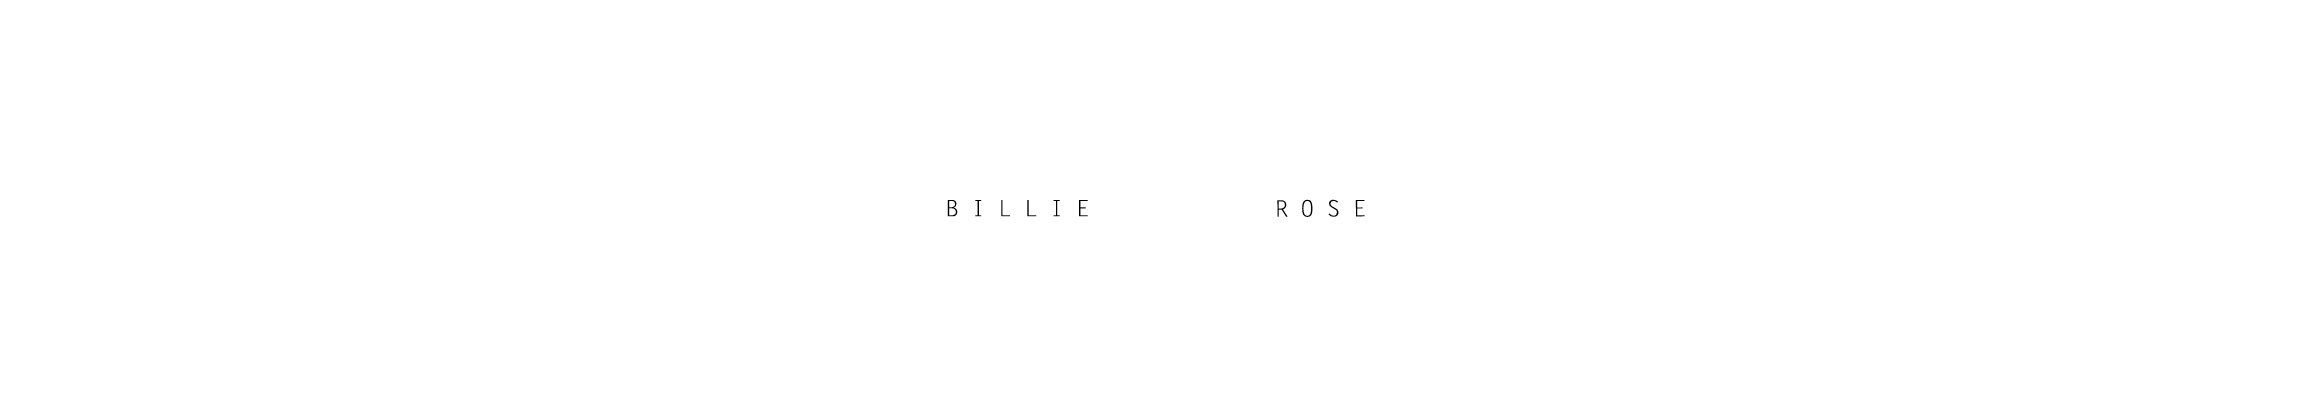 billie rose